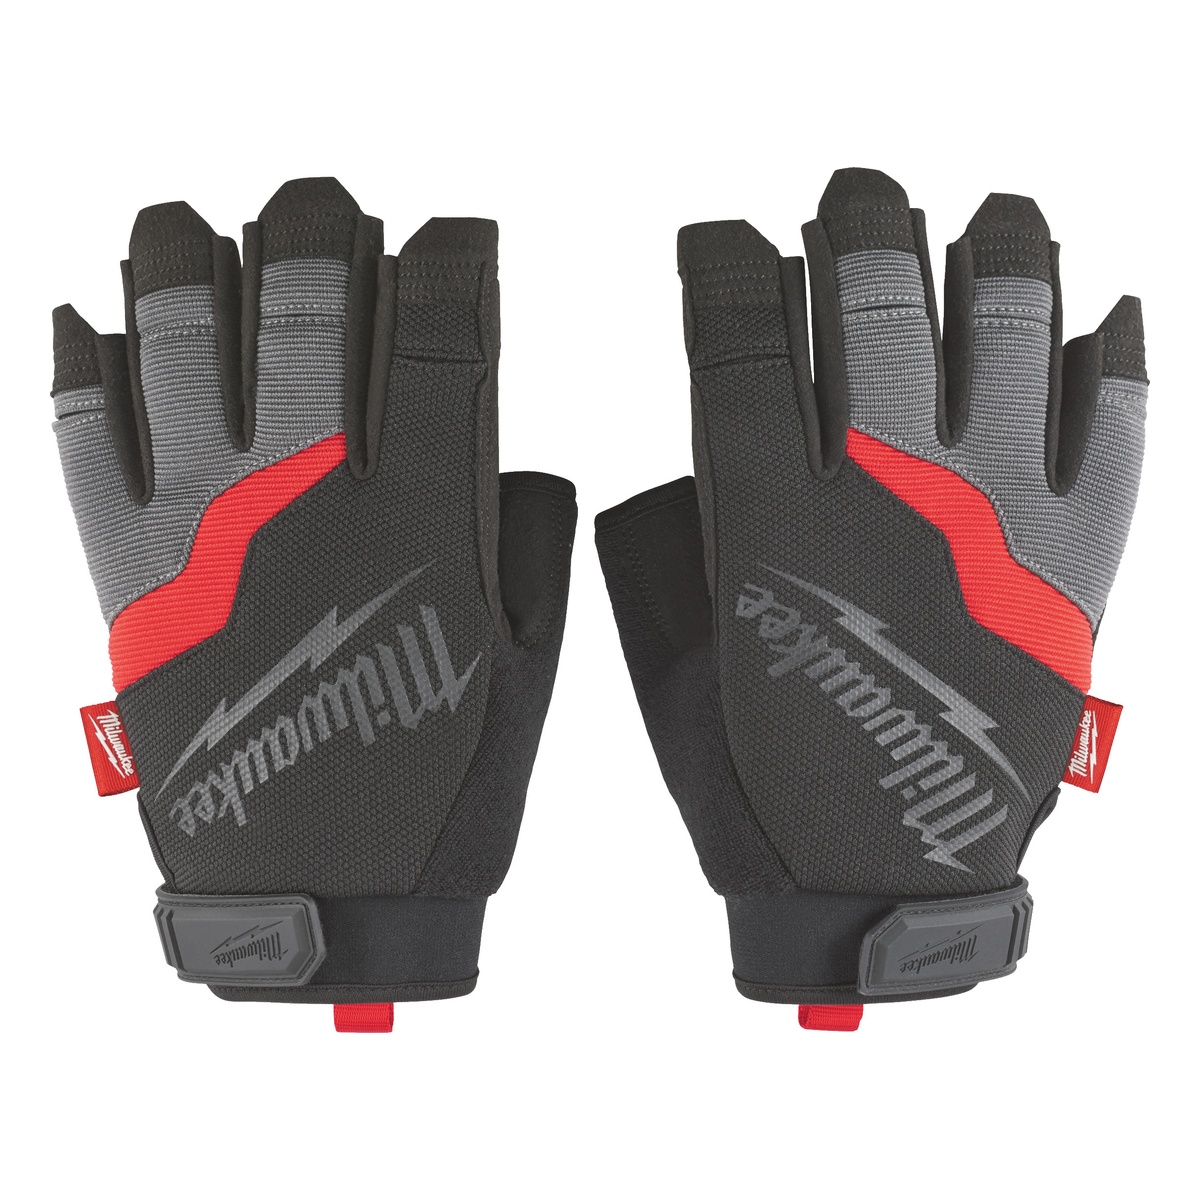 Milwaukee Größe 10 (XL) Handschuhe fingerlos - 1 Stk.